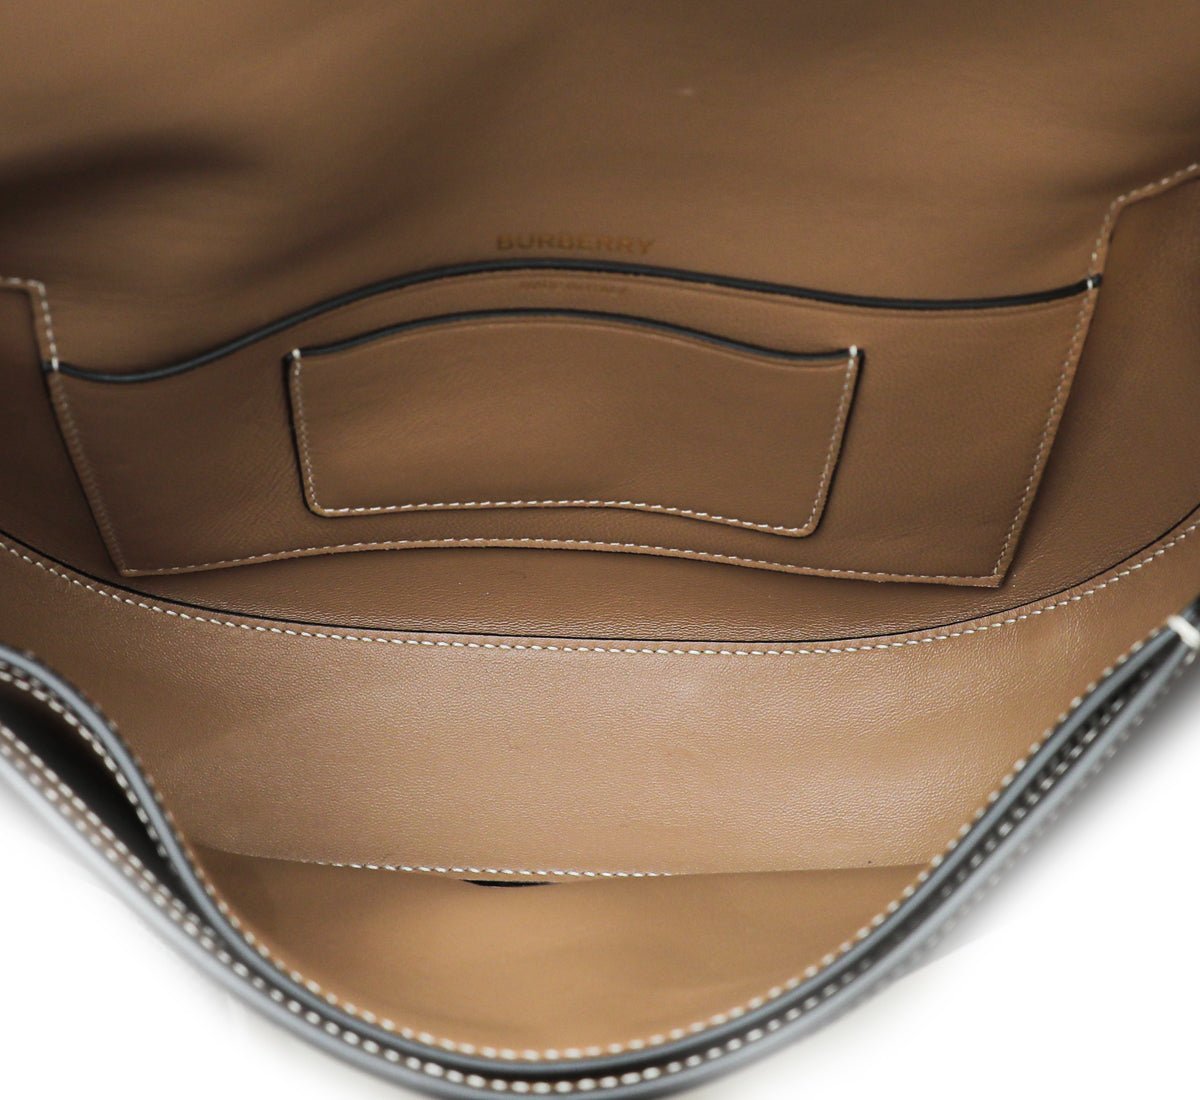 Burberry - Burberry Camel Olympia Check Small Shoulder Bag | The Closet